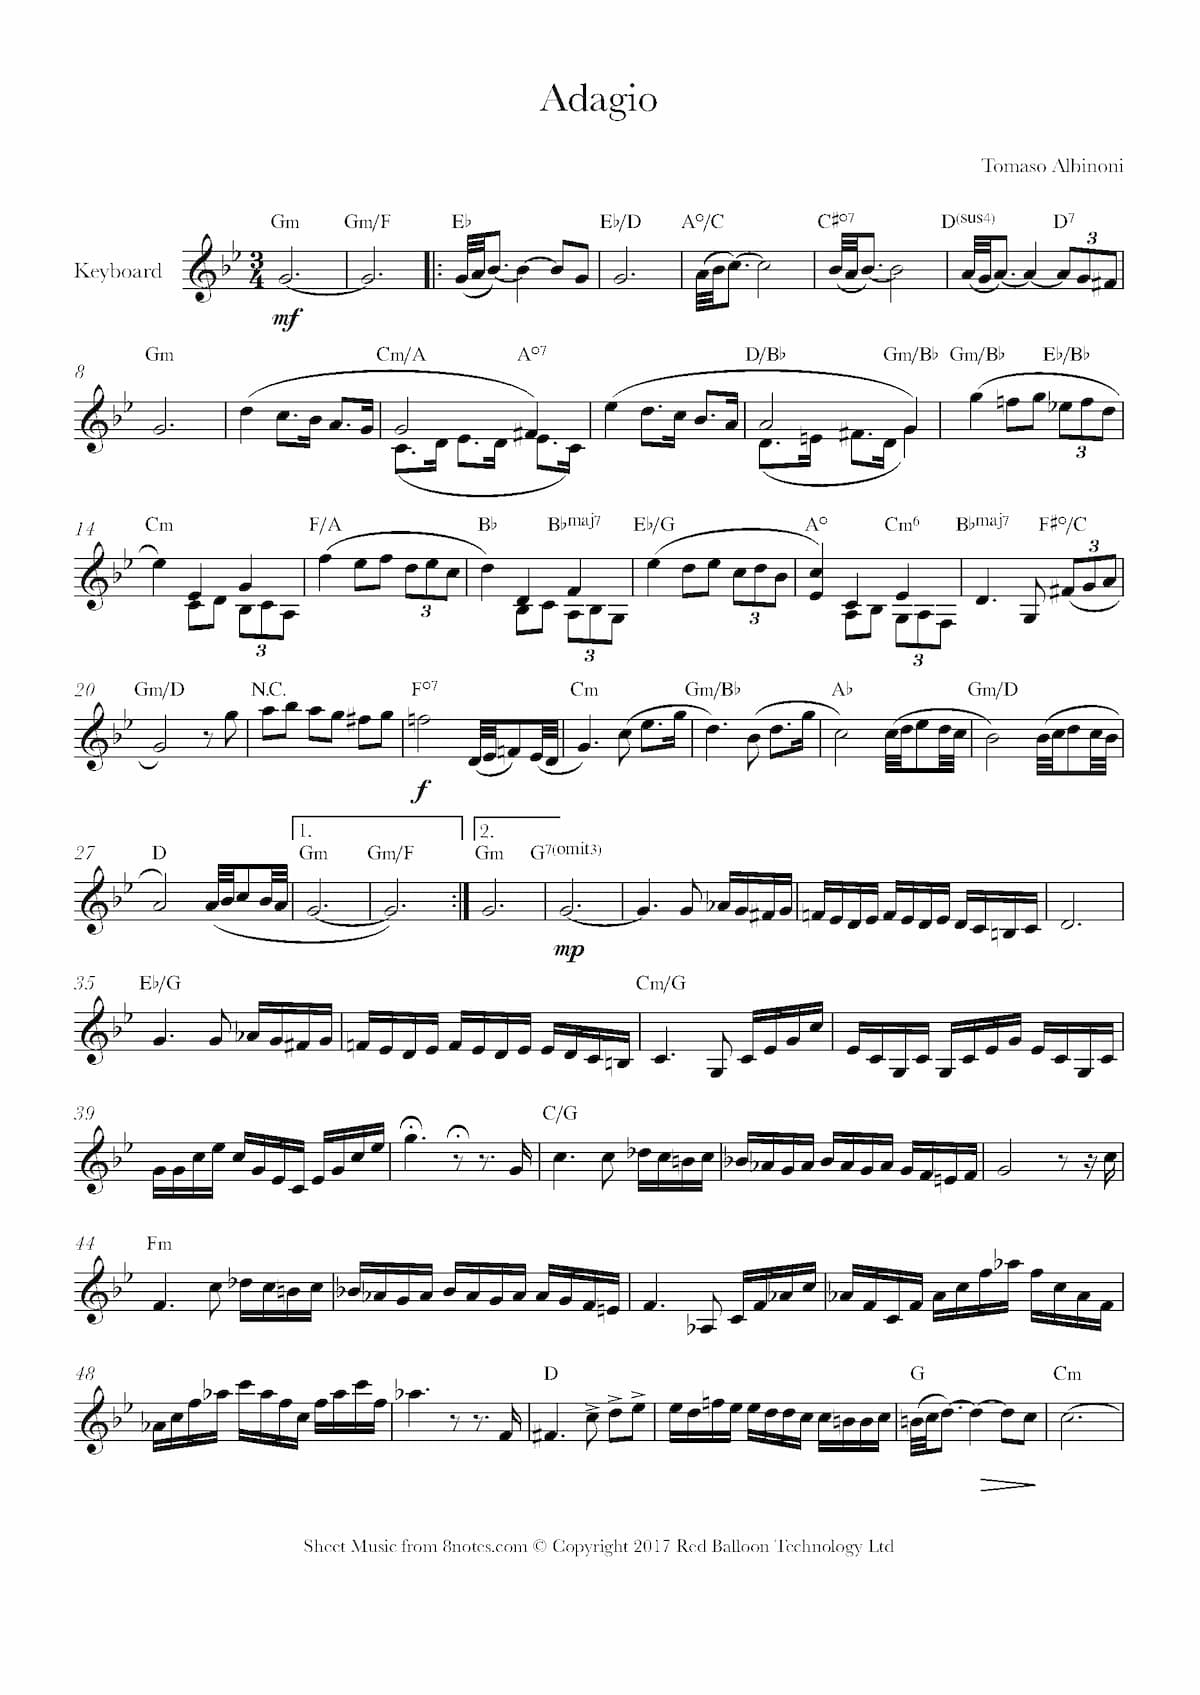 Music score of Tomaso Albinoni's Adagio